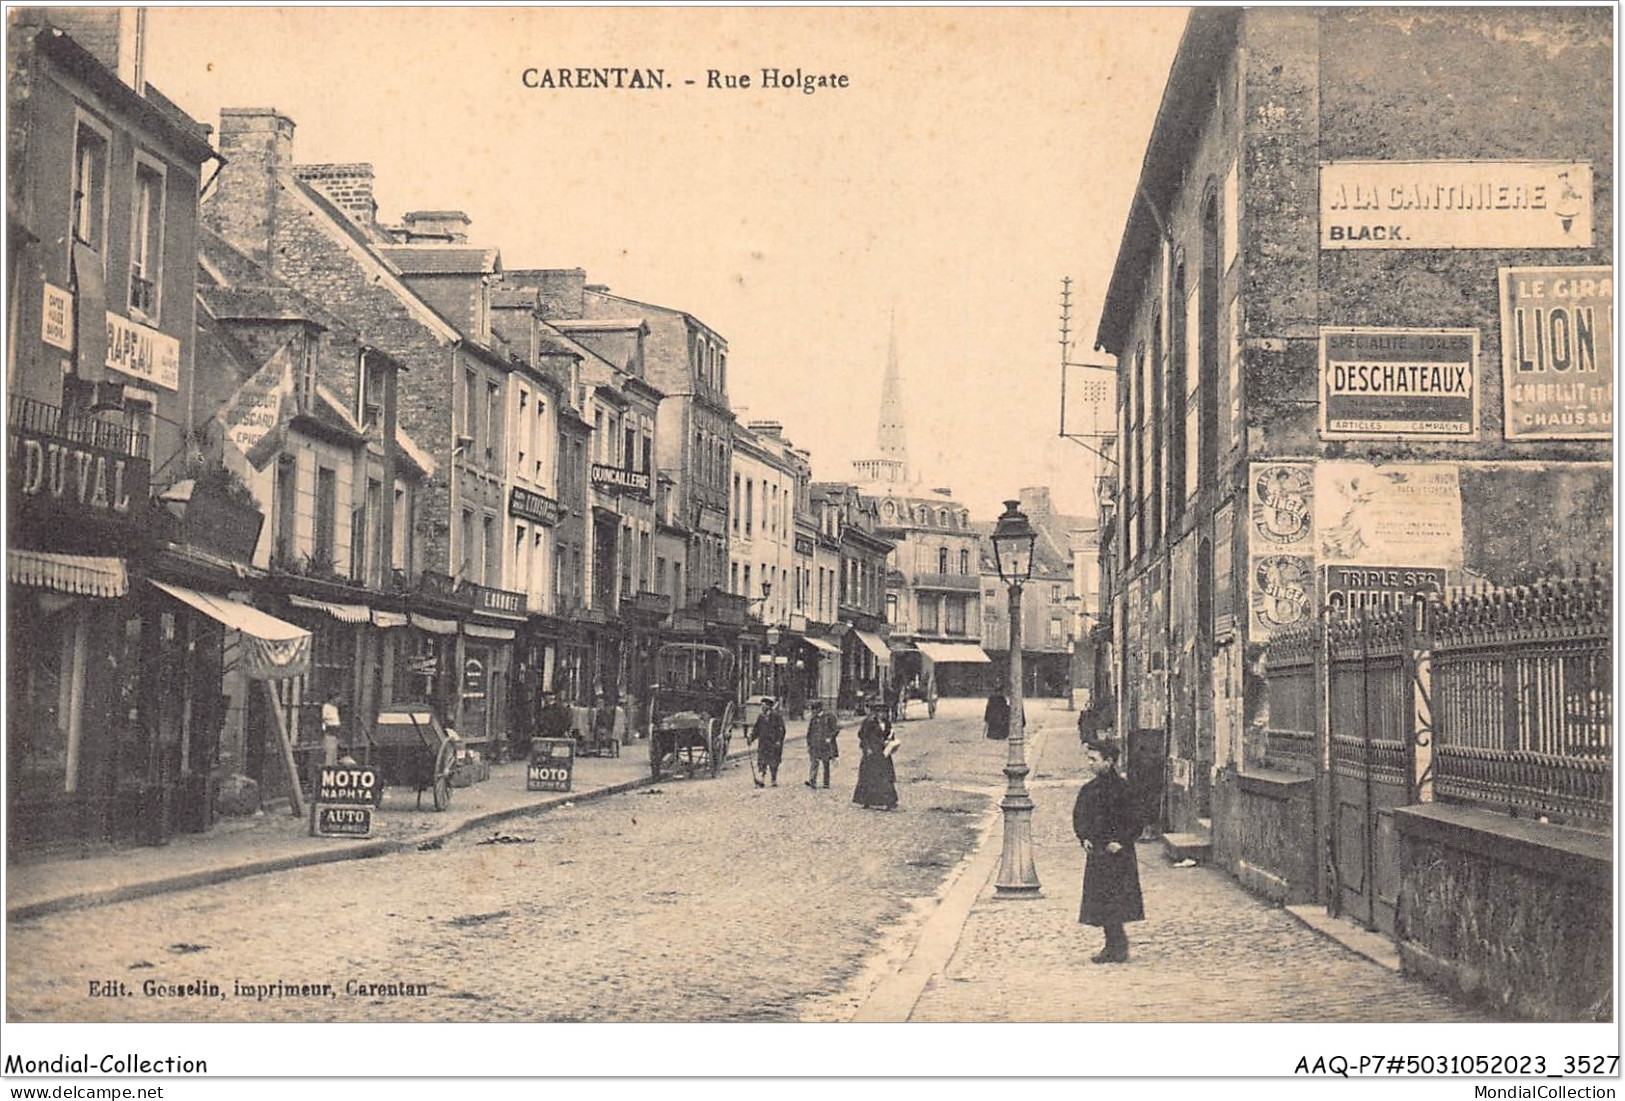 AAQP7-50-0548 - CARENTON - Rue Holgate - Carentan